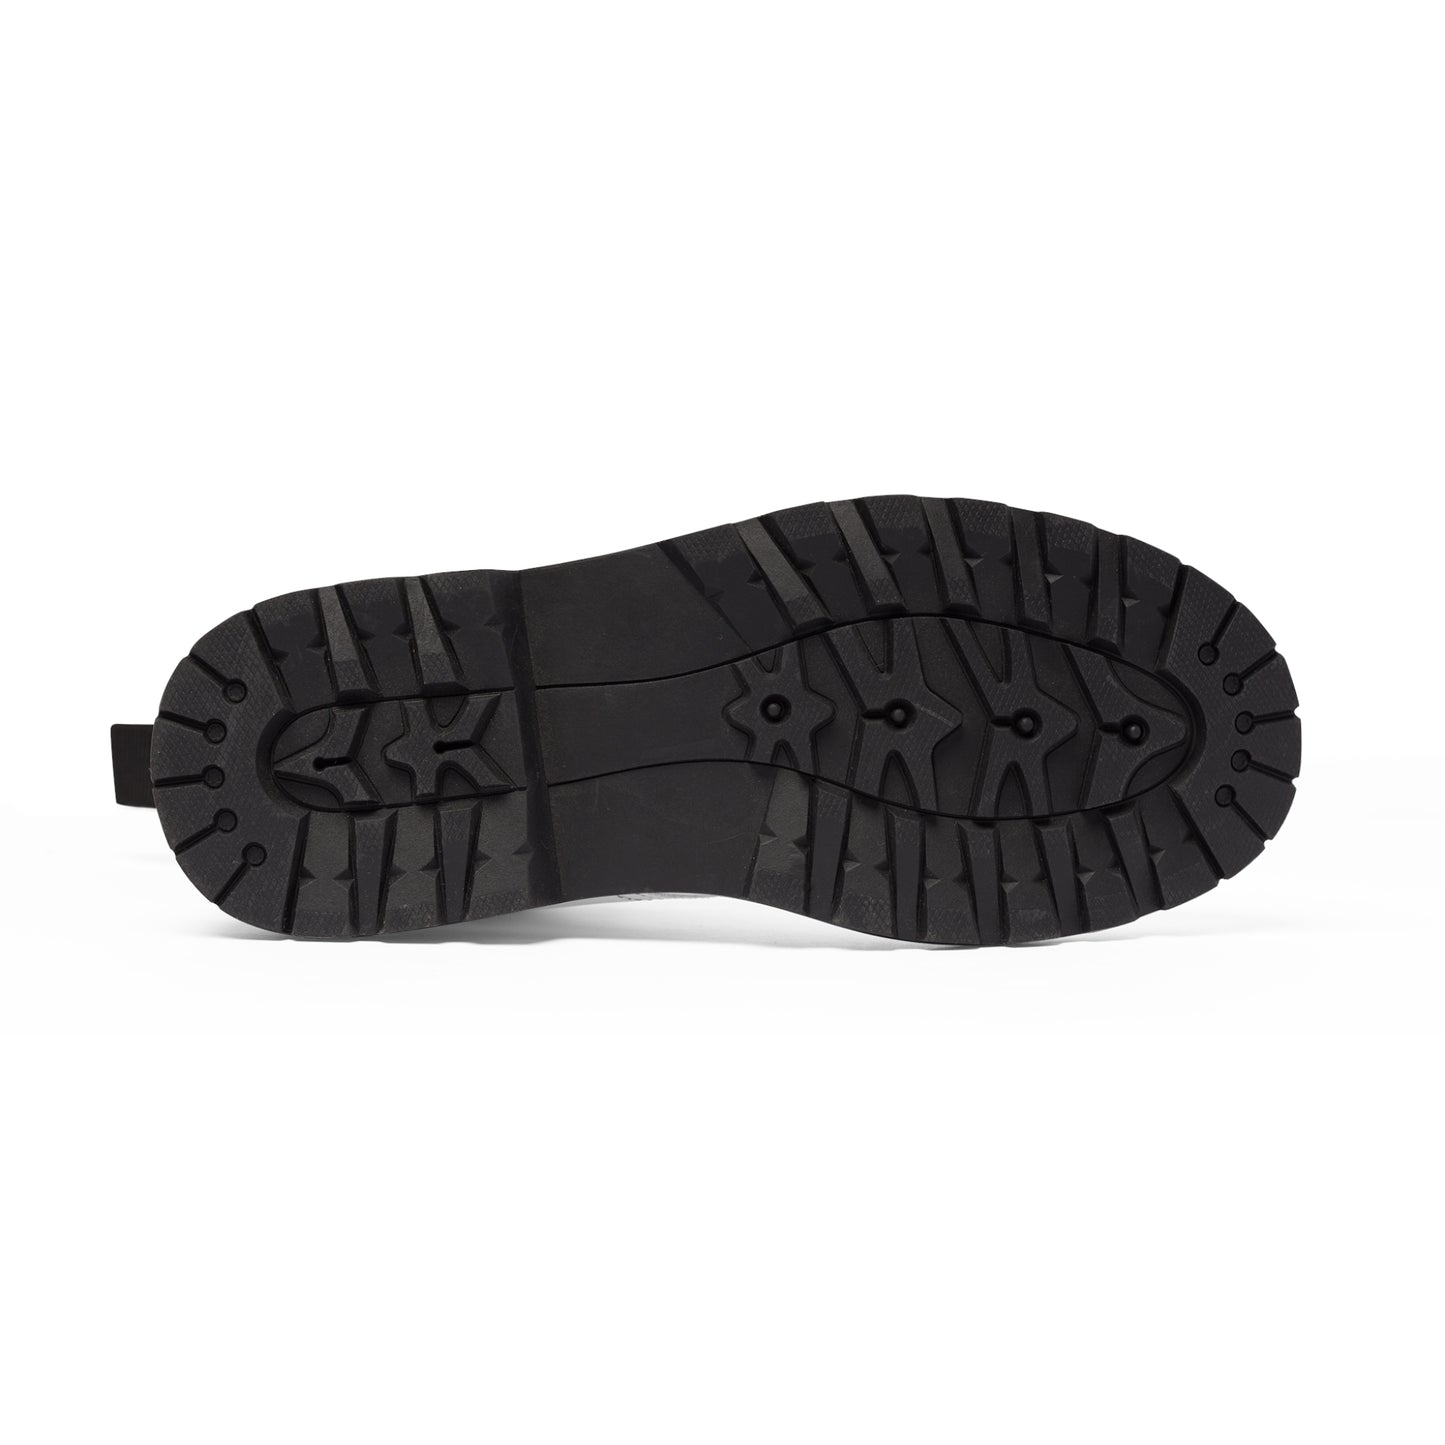 Men's Canvas Boots - 02878 US 10.5 Black sole